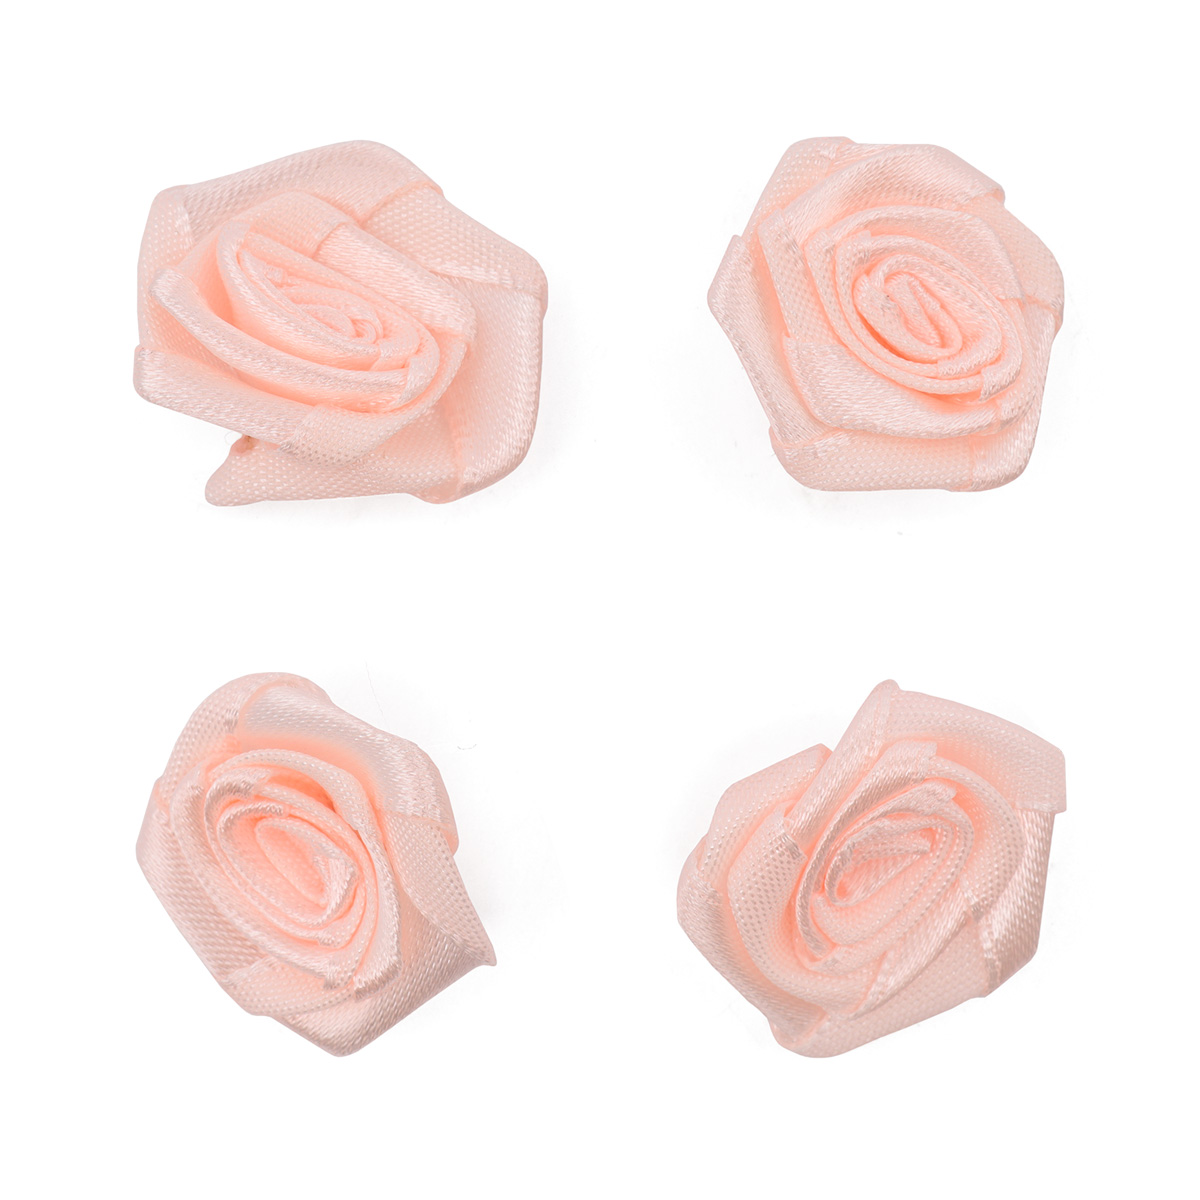 Цветы пришивные атласные 'Роза' 2,5 см, 4шт.